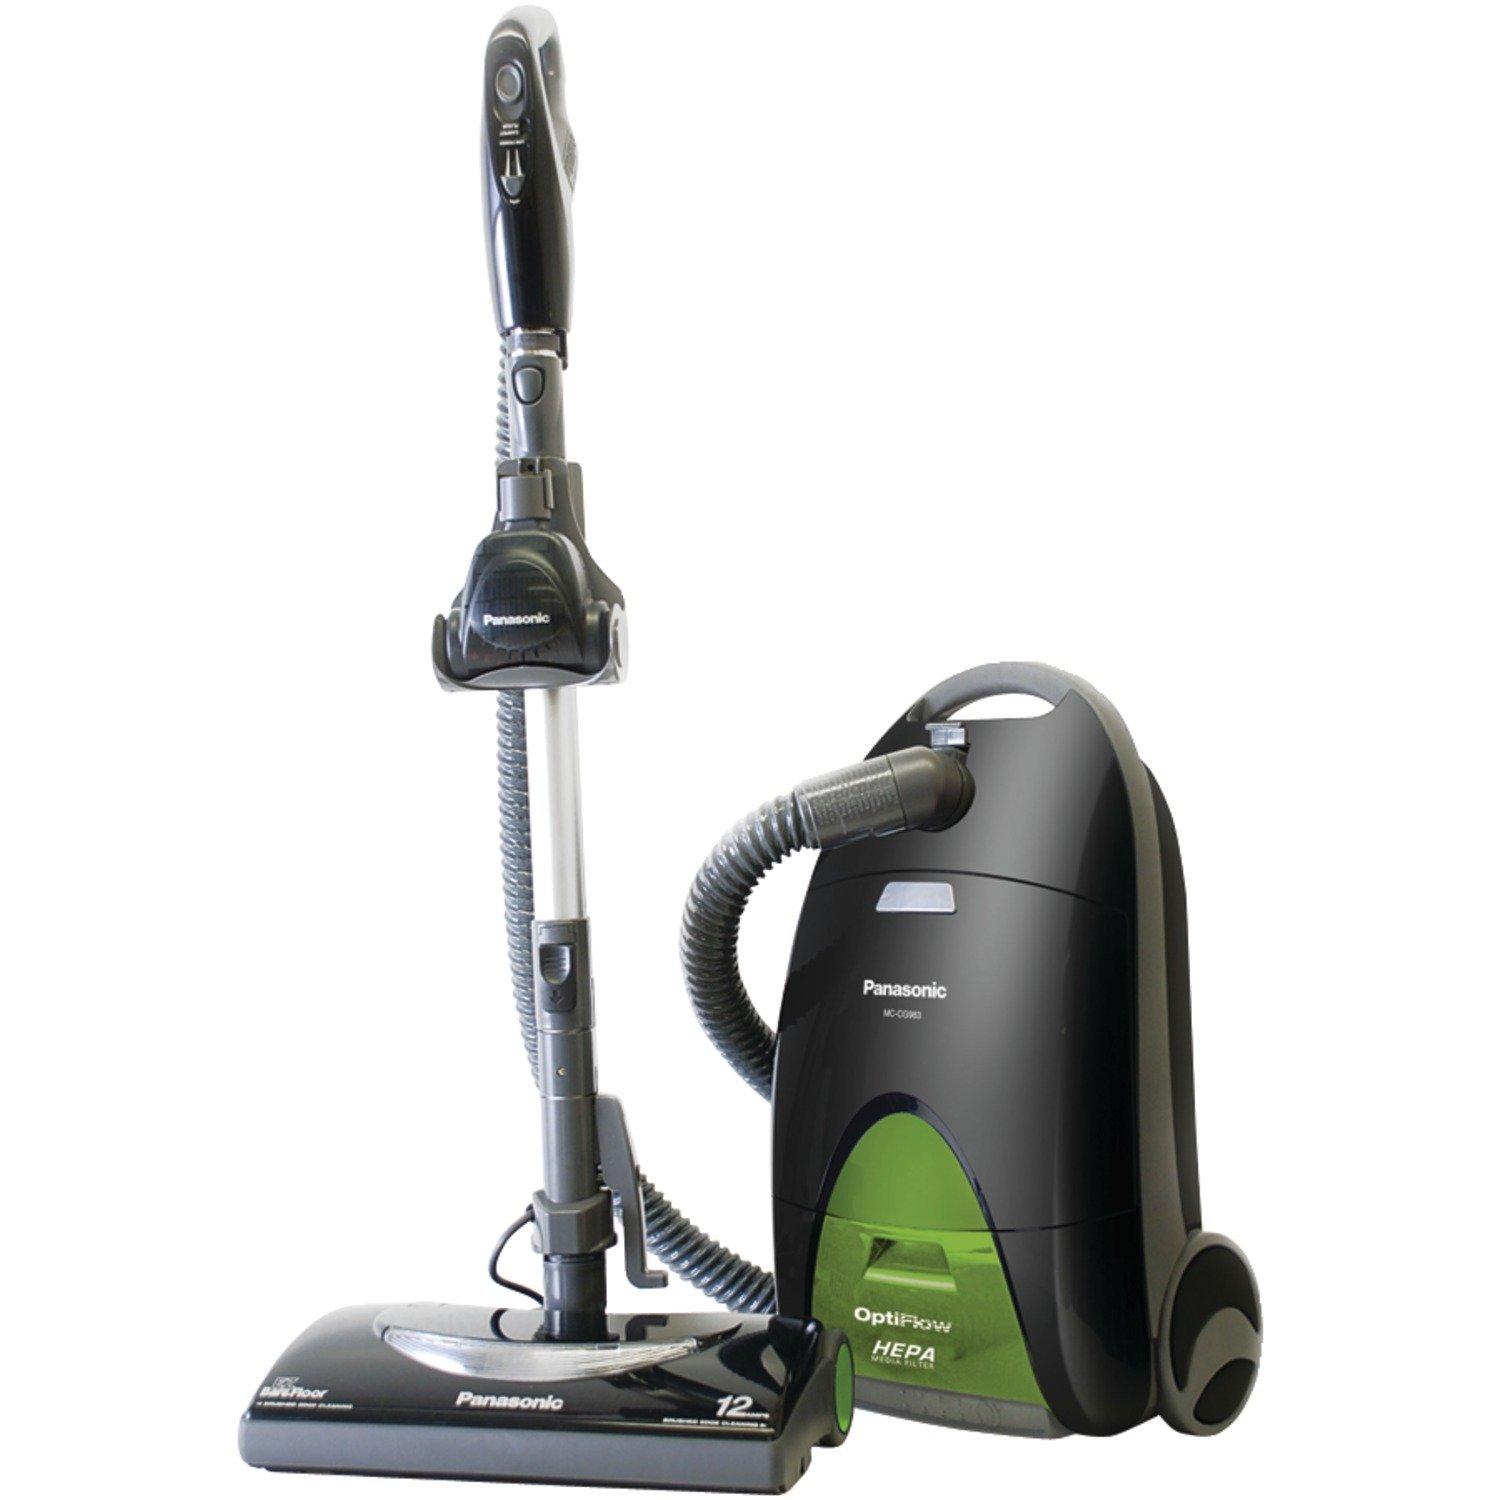 Vacuum cleaner repairs in High Barnet